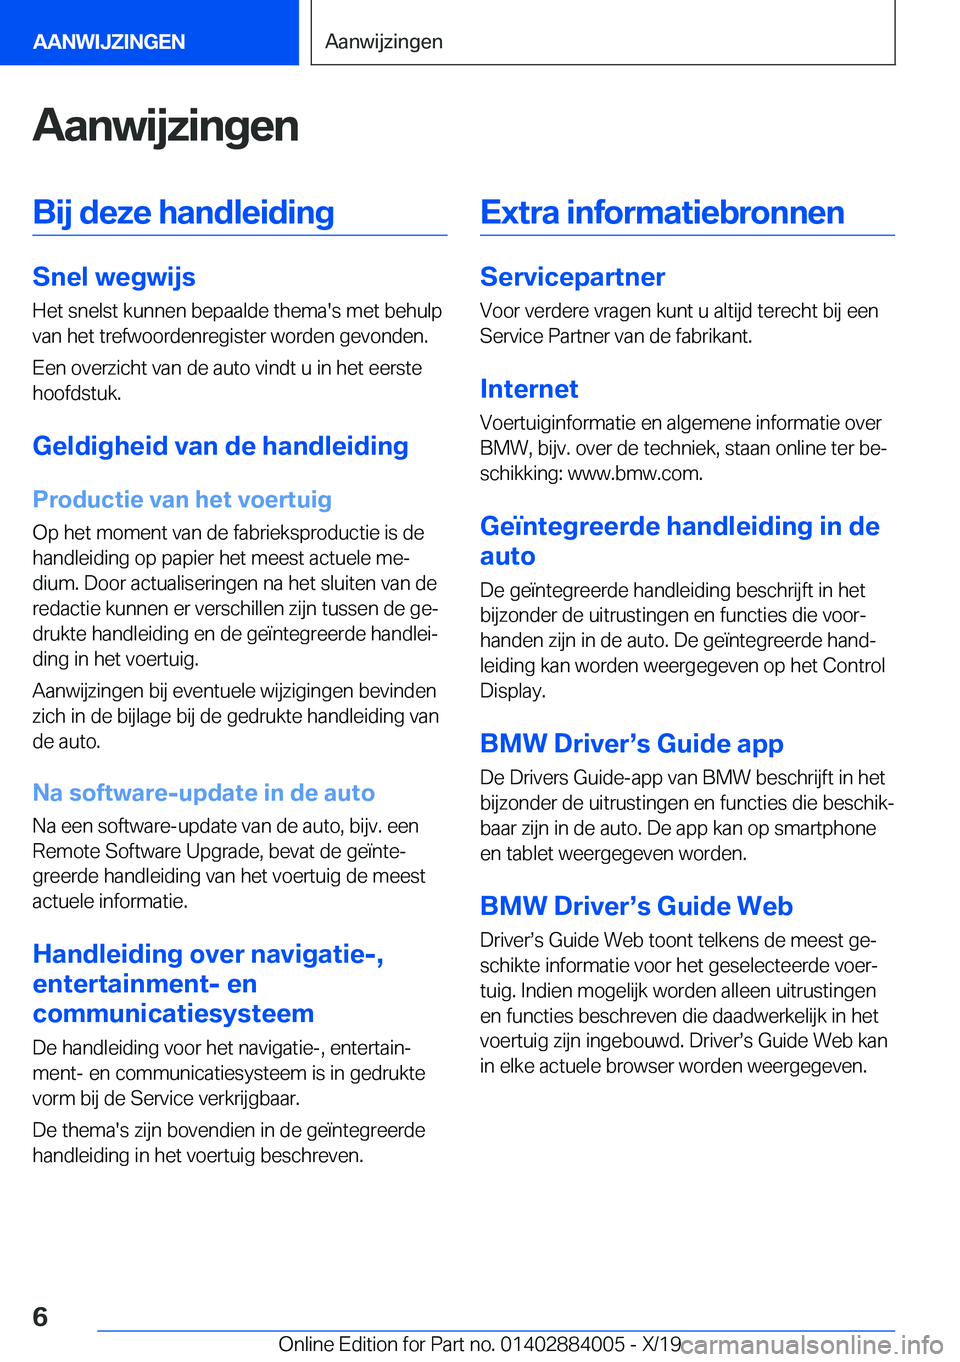 BMW X7 2020  Instructieboekjes (in Dutch) �A�a�n�w�i�j�z�i�n�g�e�n�B�i�j��d�e�z�e��h�a�n�d�l�e�i�d�i�n�g
�S�n�e�l��w�e�g�w�i�j�s
�H�e�t��s�n�e�l�s�t��k�u�n�n�e�n��b�e�p�a�a�l�d�e��t�h�e�m�a�'�s��m�e�t��b�e�h�u�l�p
�v�a�n��h�e�t�